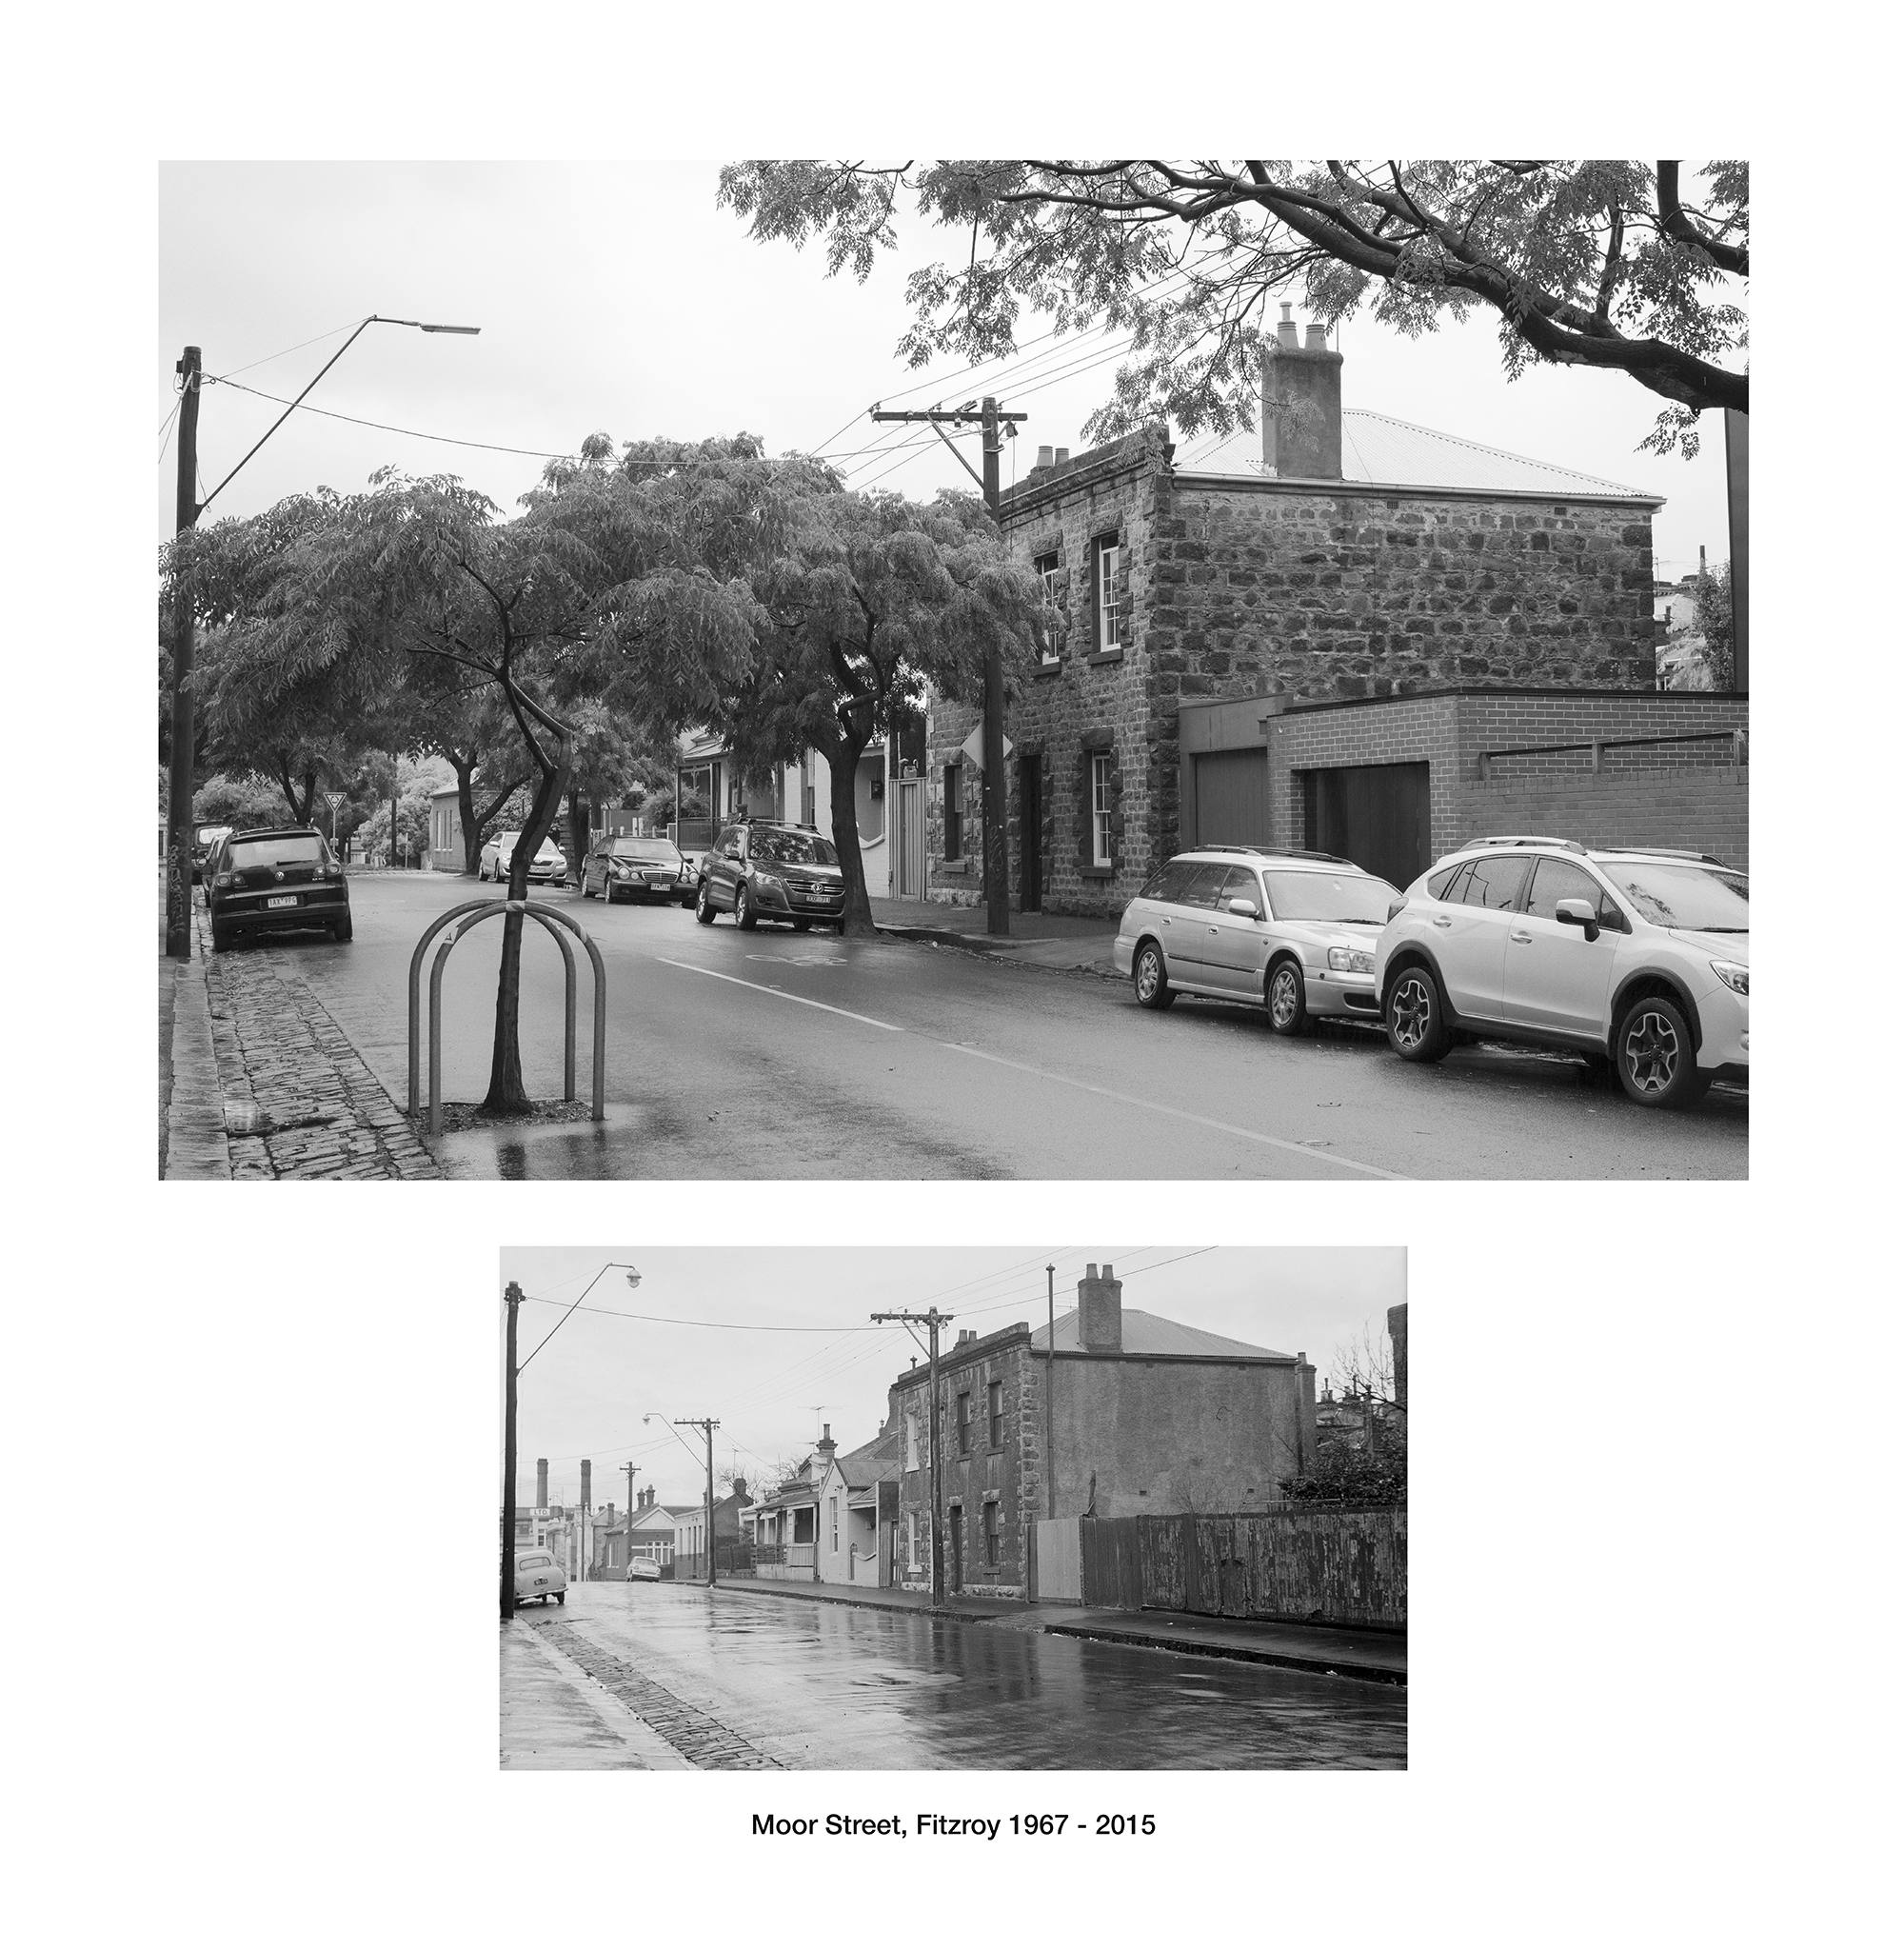 Moor Street, Fitzroy 1967 - 2016